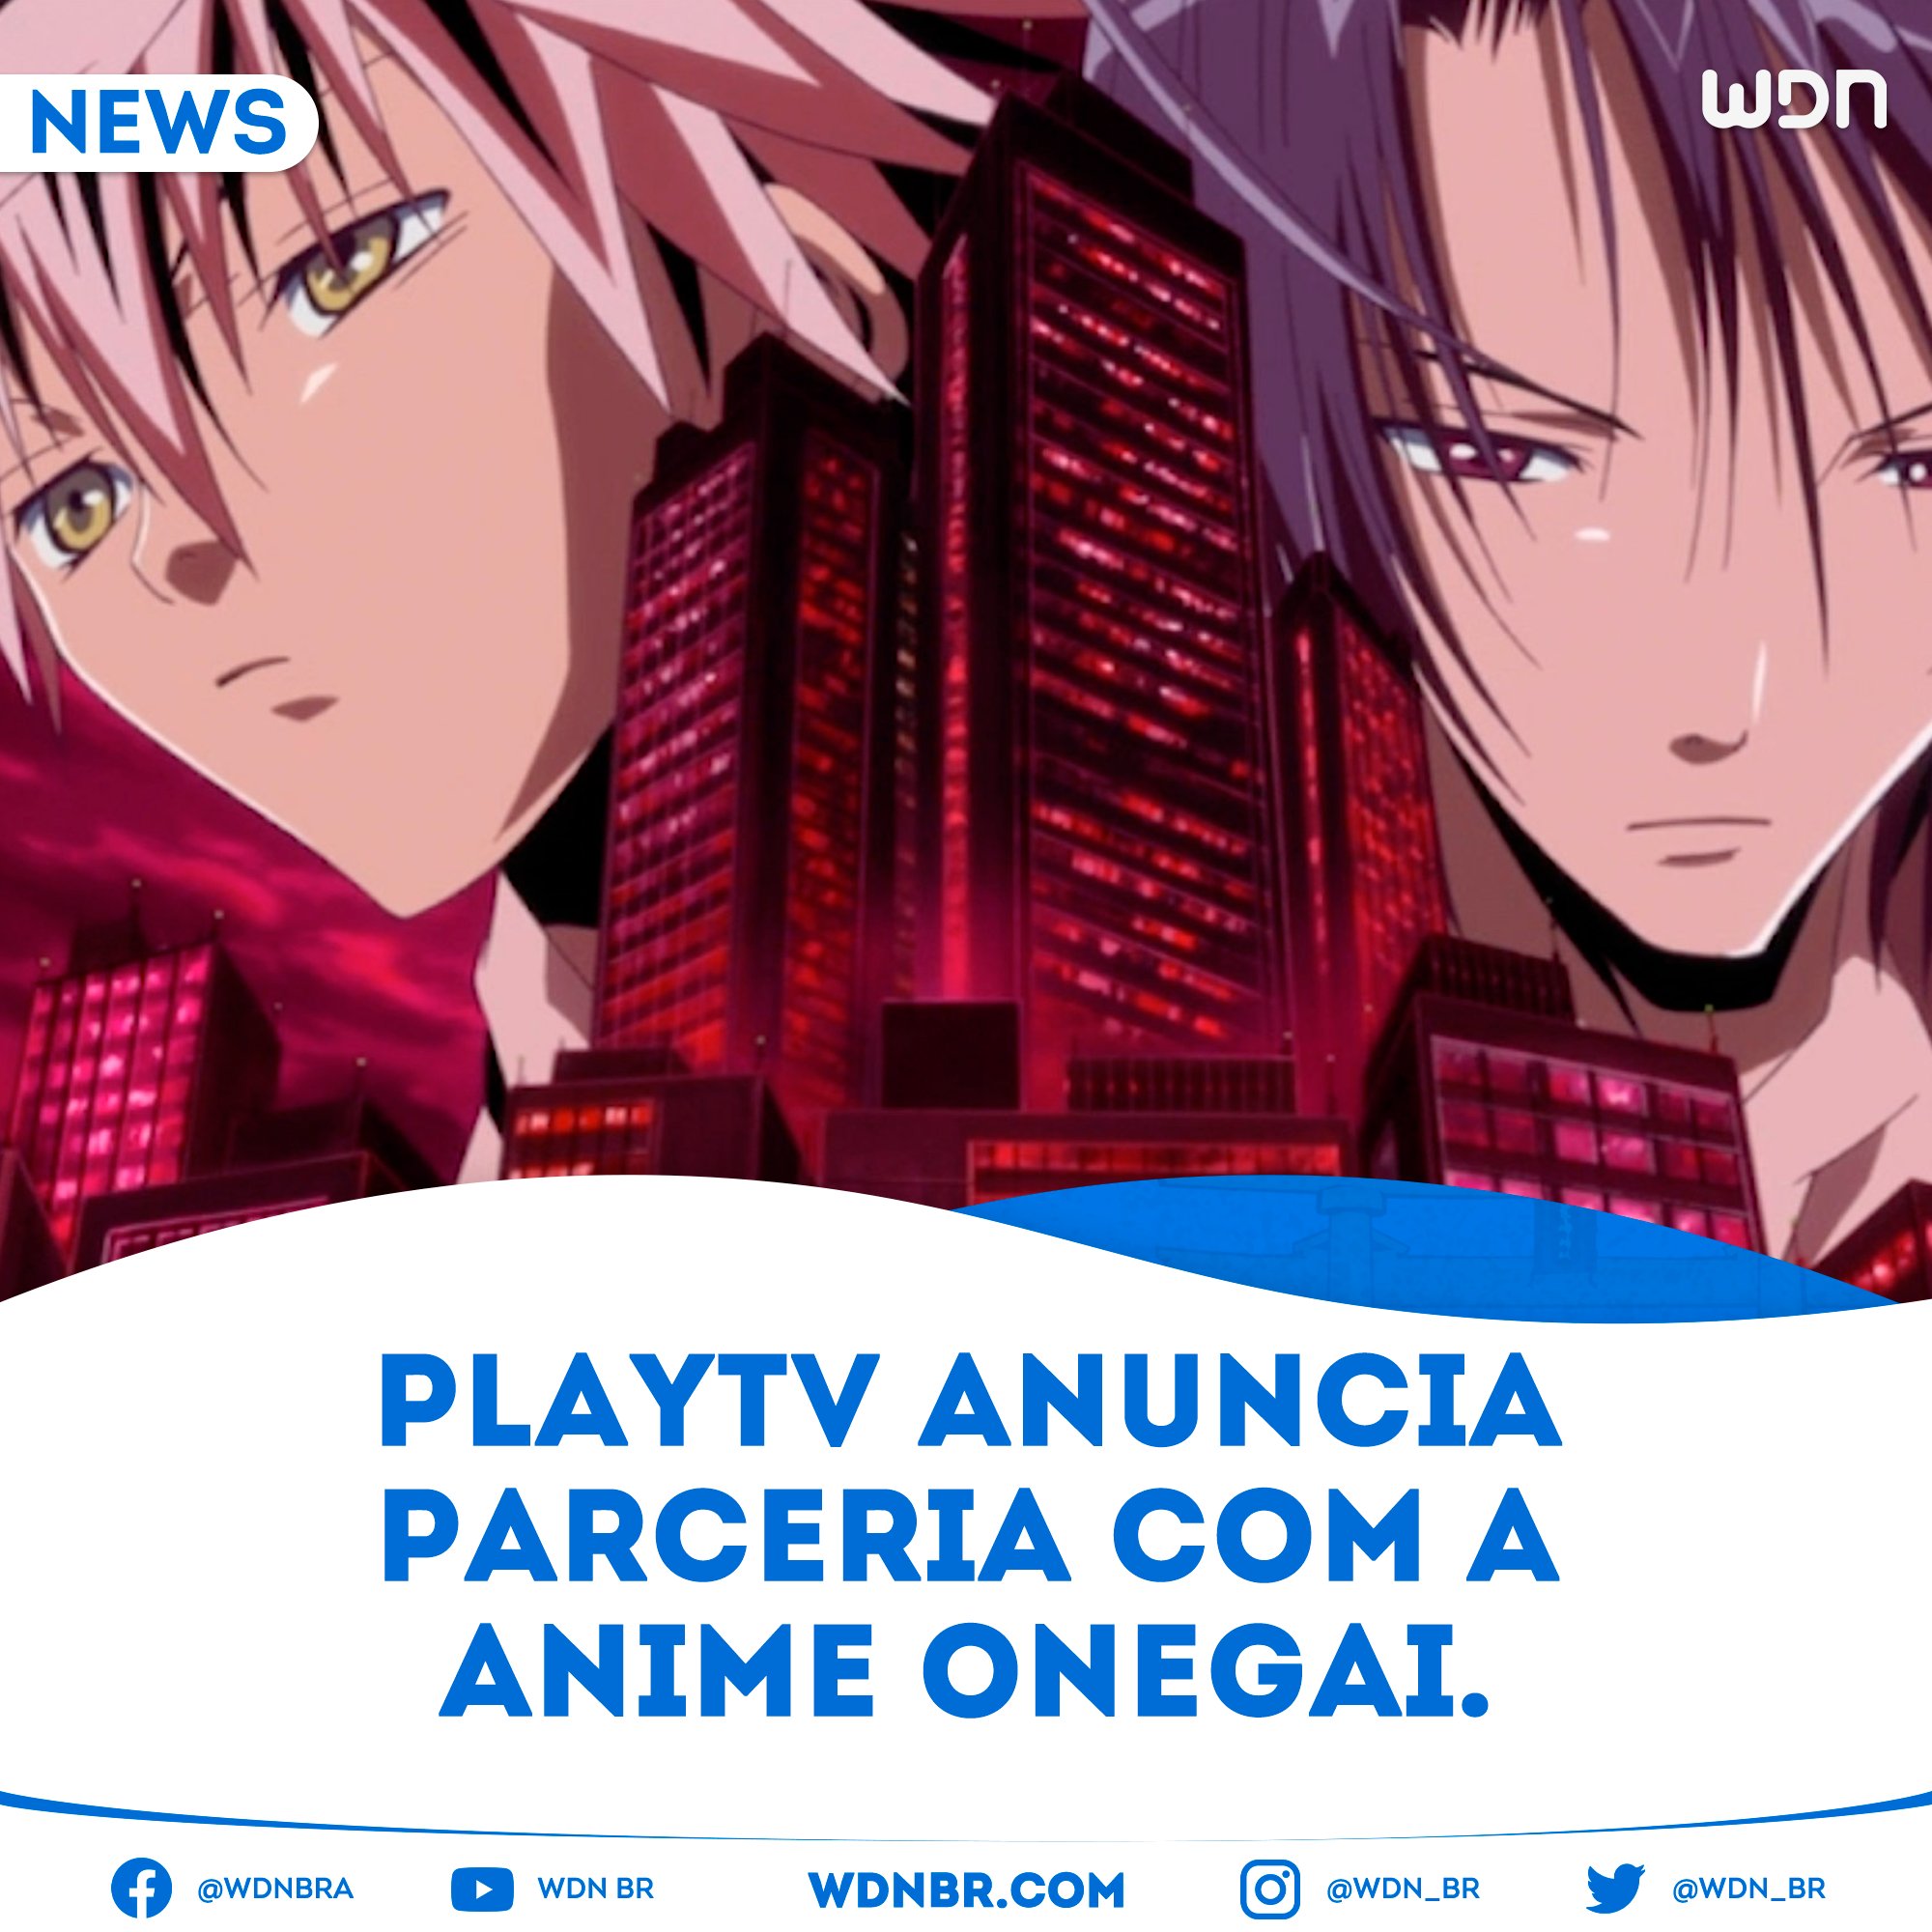 Anime Onegai anuncia dublagem em português para as séries dubladas